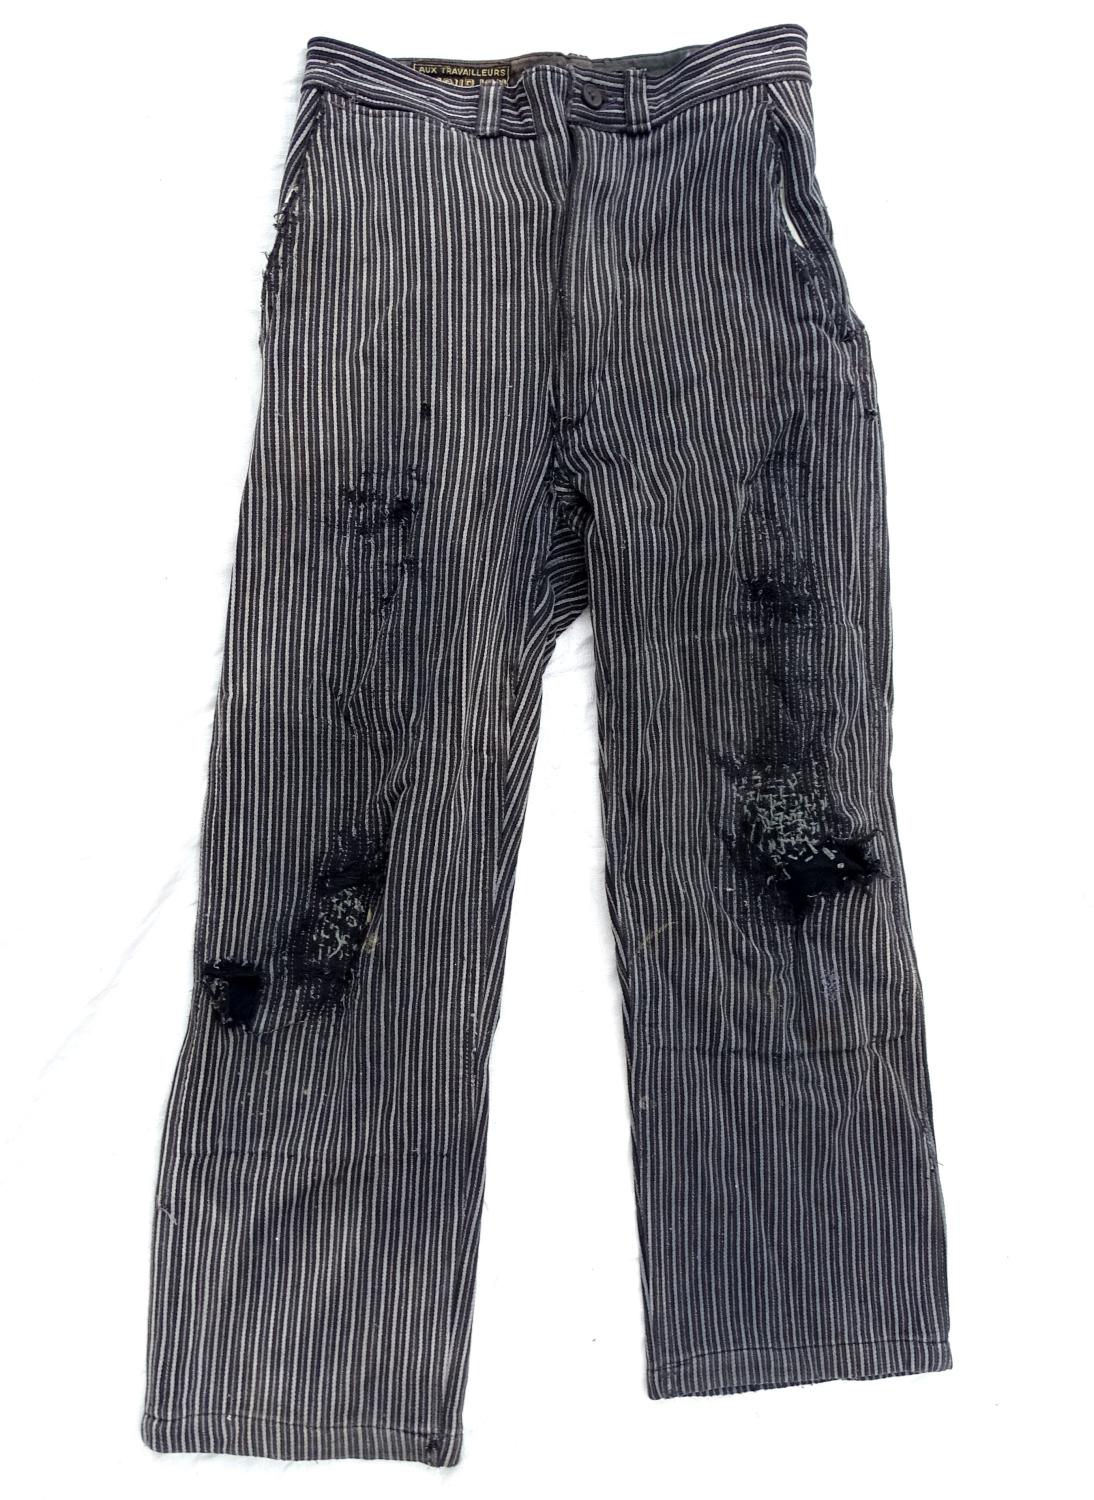 Pantalon, toile rayée. Le populaire, années 40.